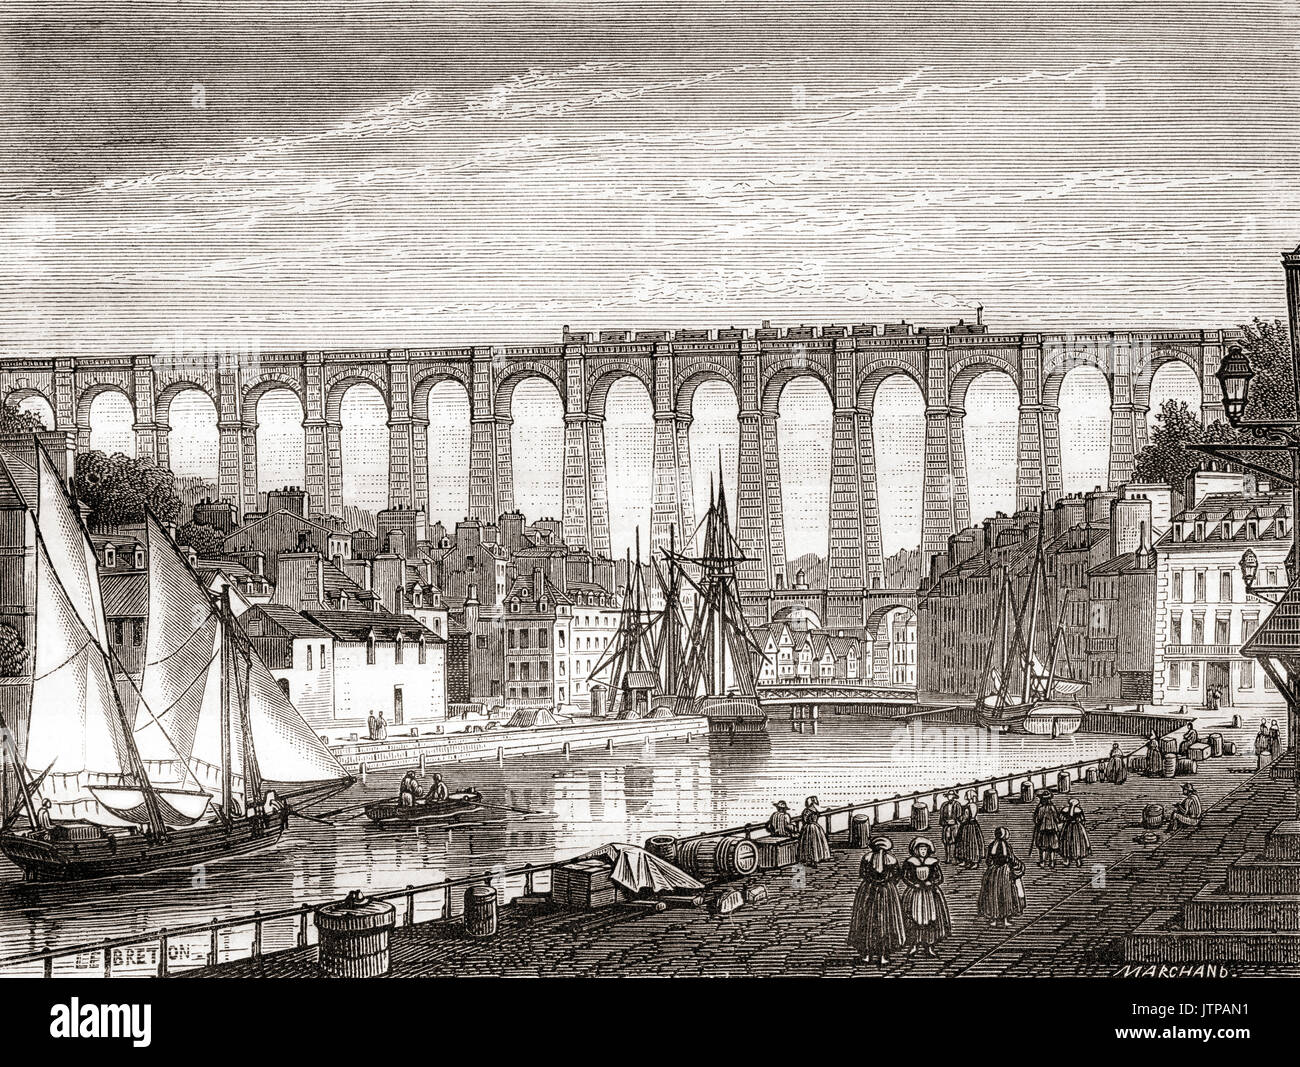 Die Eisenbahn von Paris nach Brest die Viadukt Morlaix, Frankreich, 1863 Kreuzung. Von Les merveilles de la Science, veröffentlicht 1870. Stockfoto